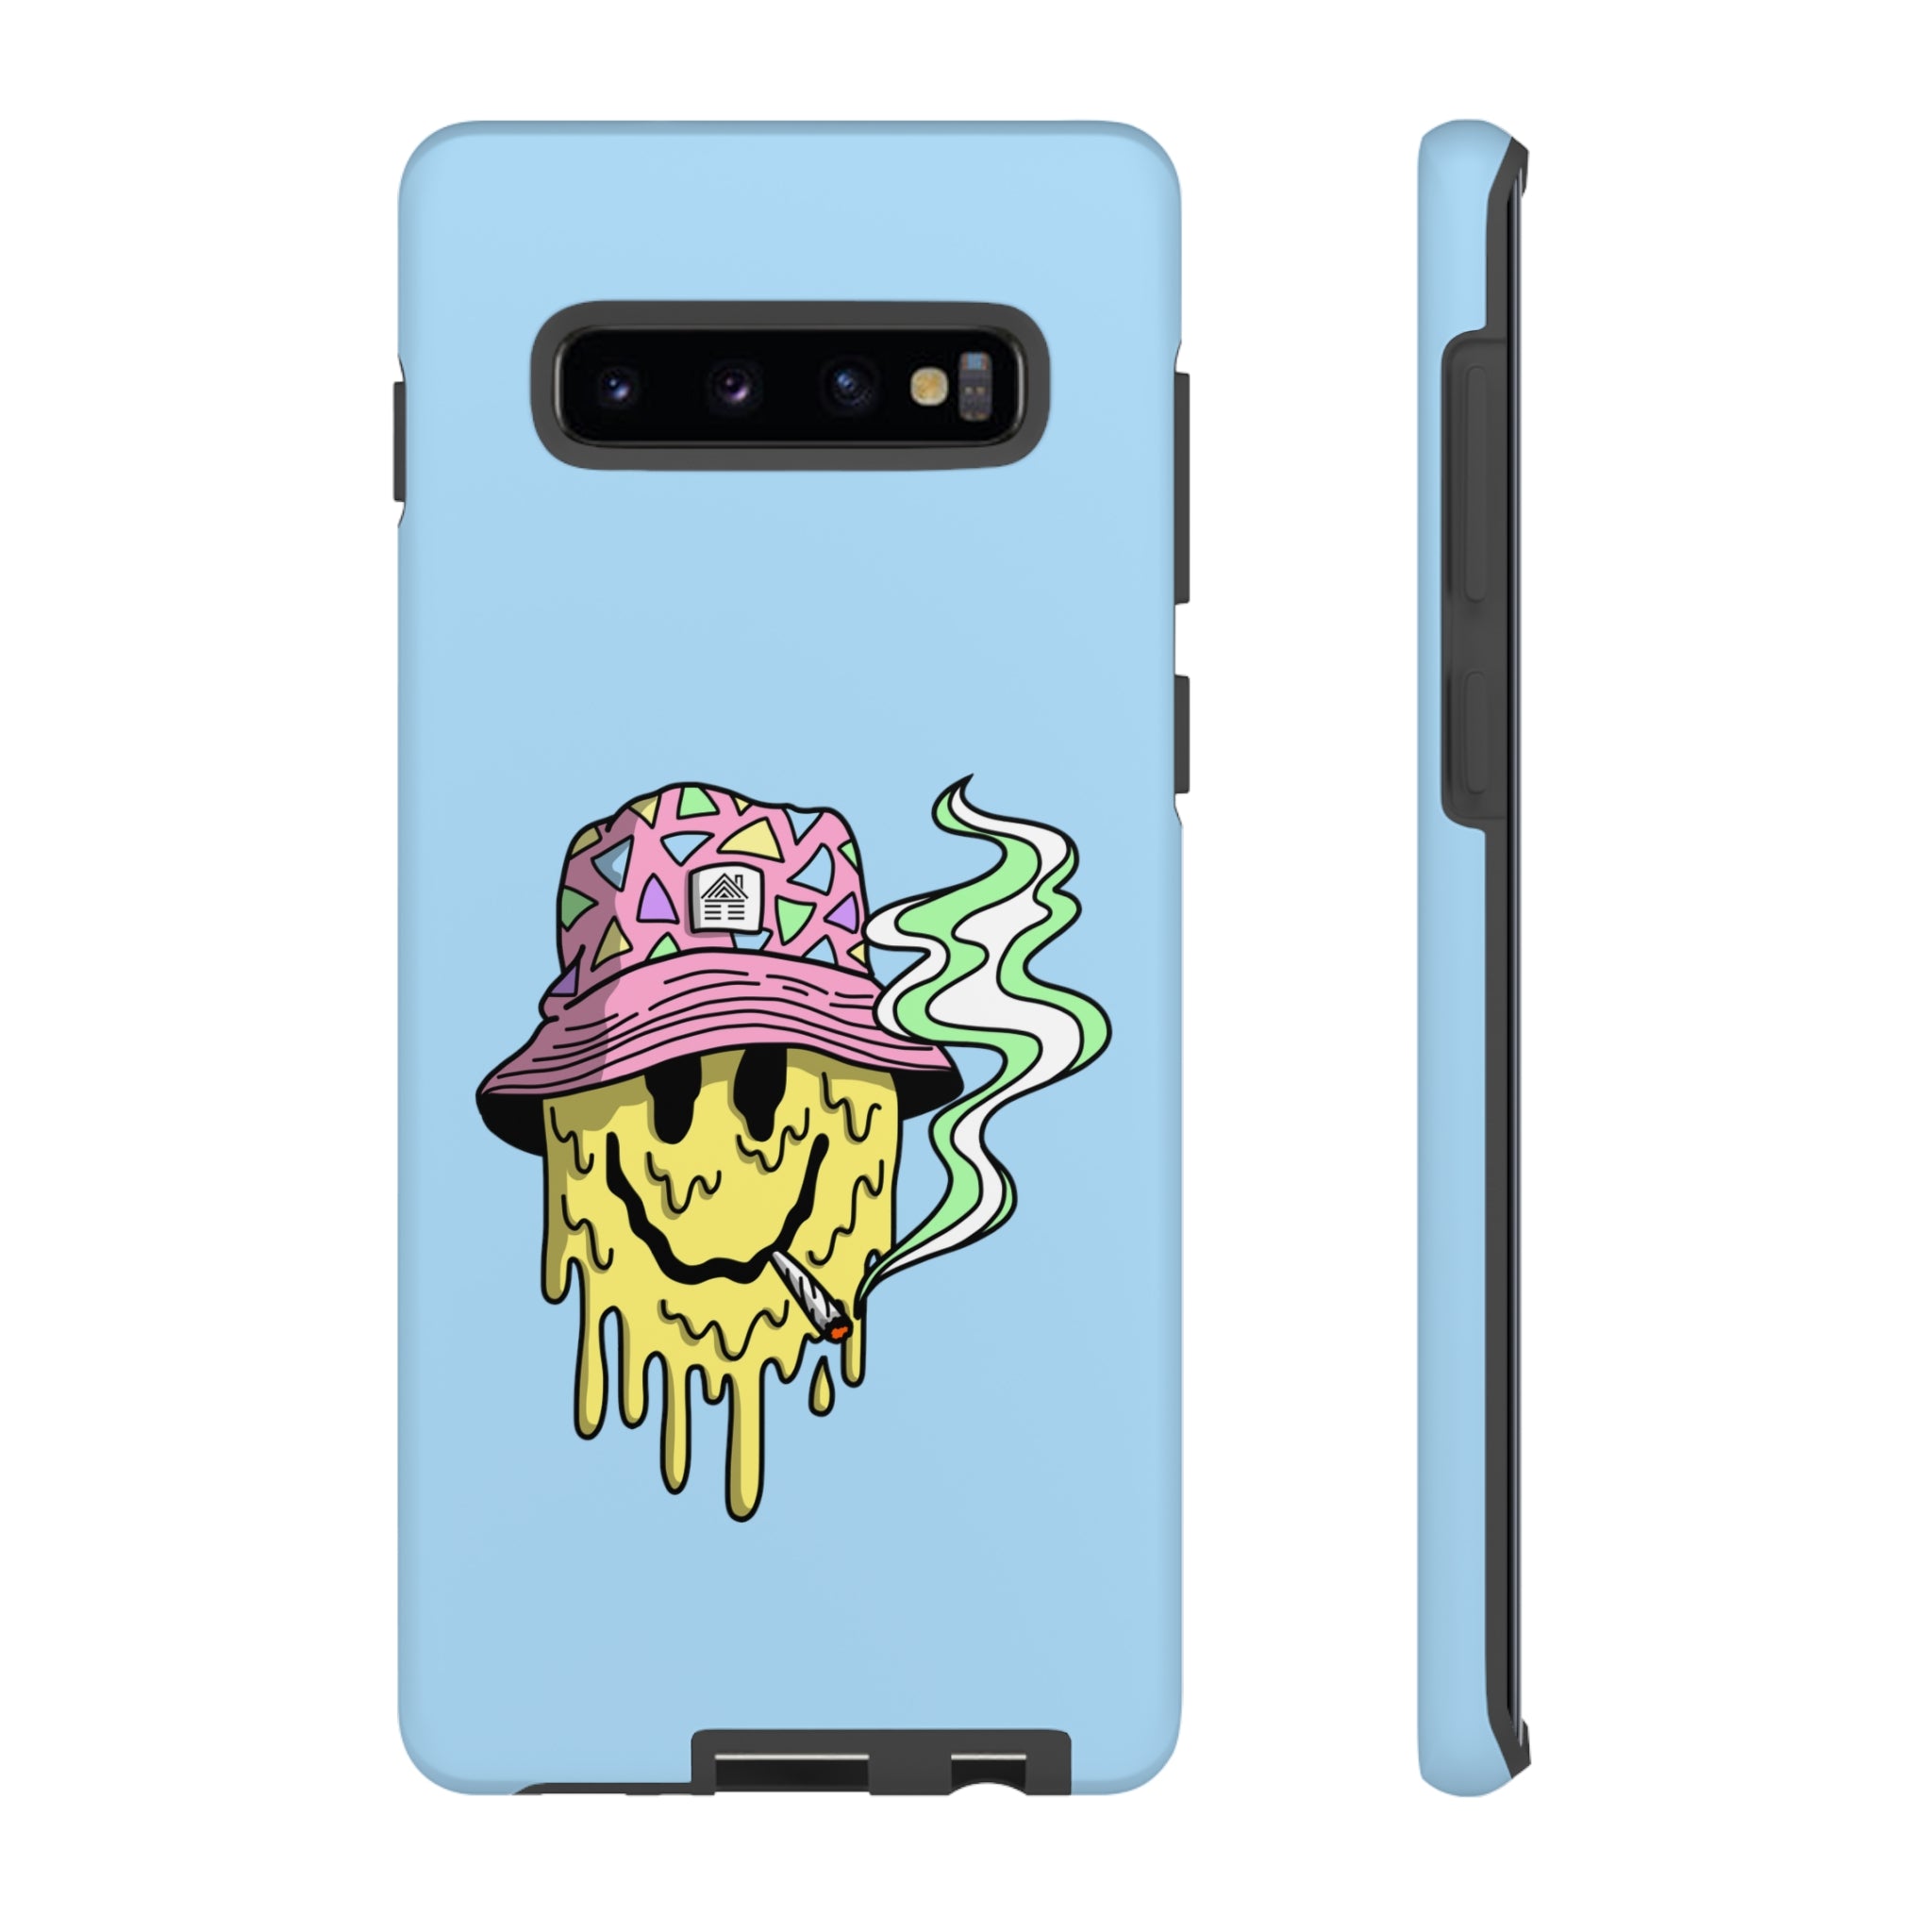 Stoney Smiley Phone Case